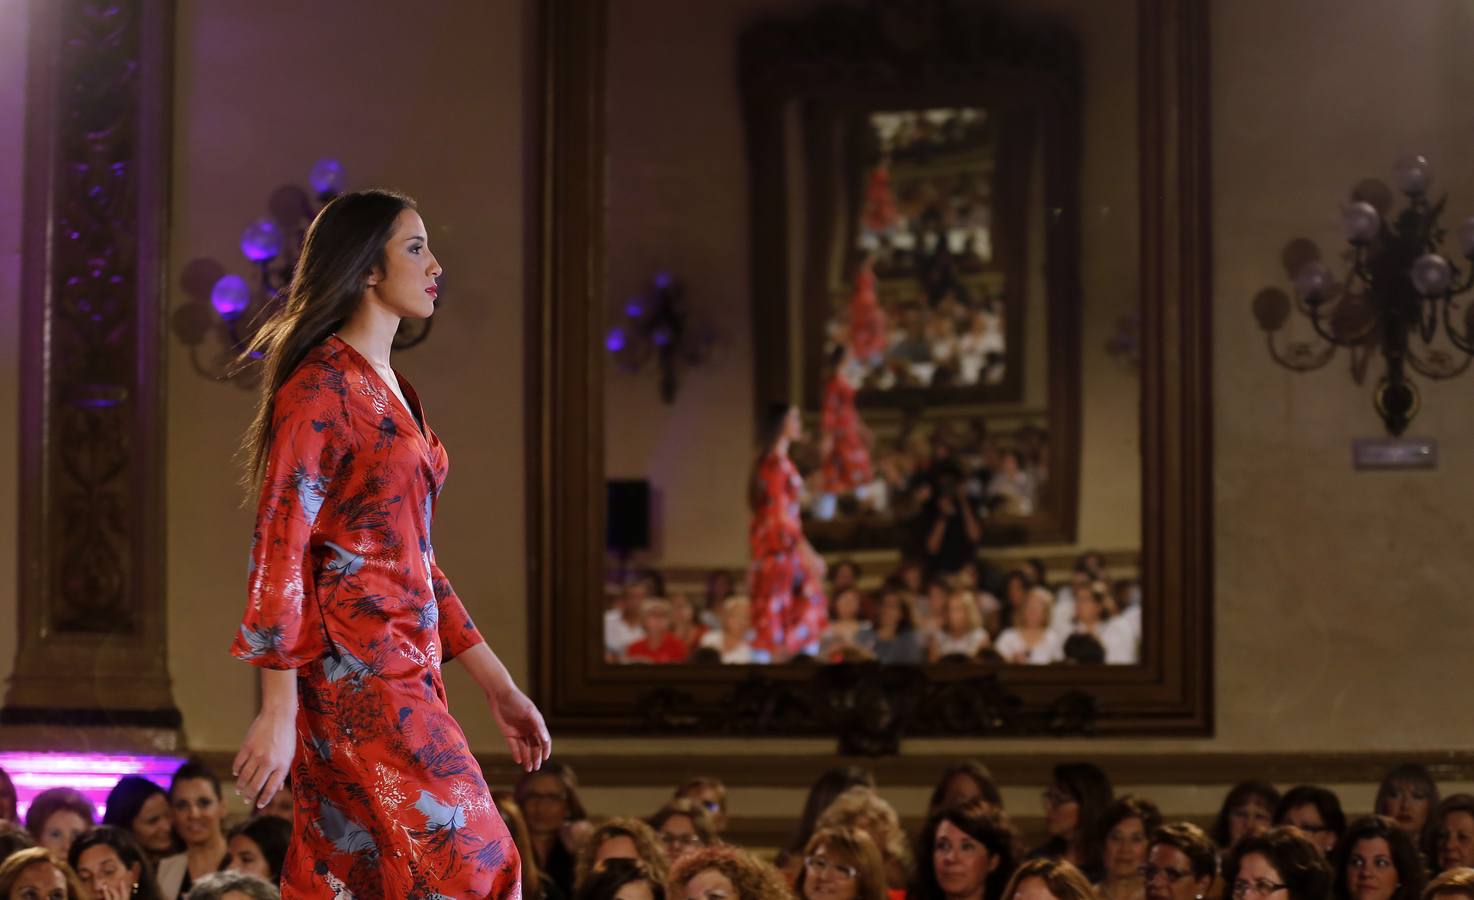 El desfile de moda contra el cáncer, en imágenes